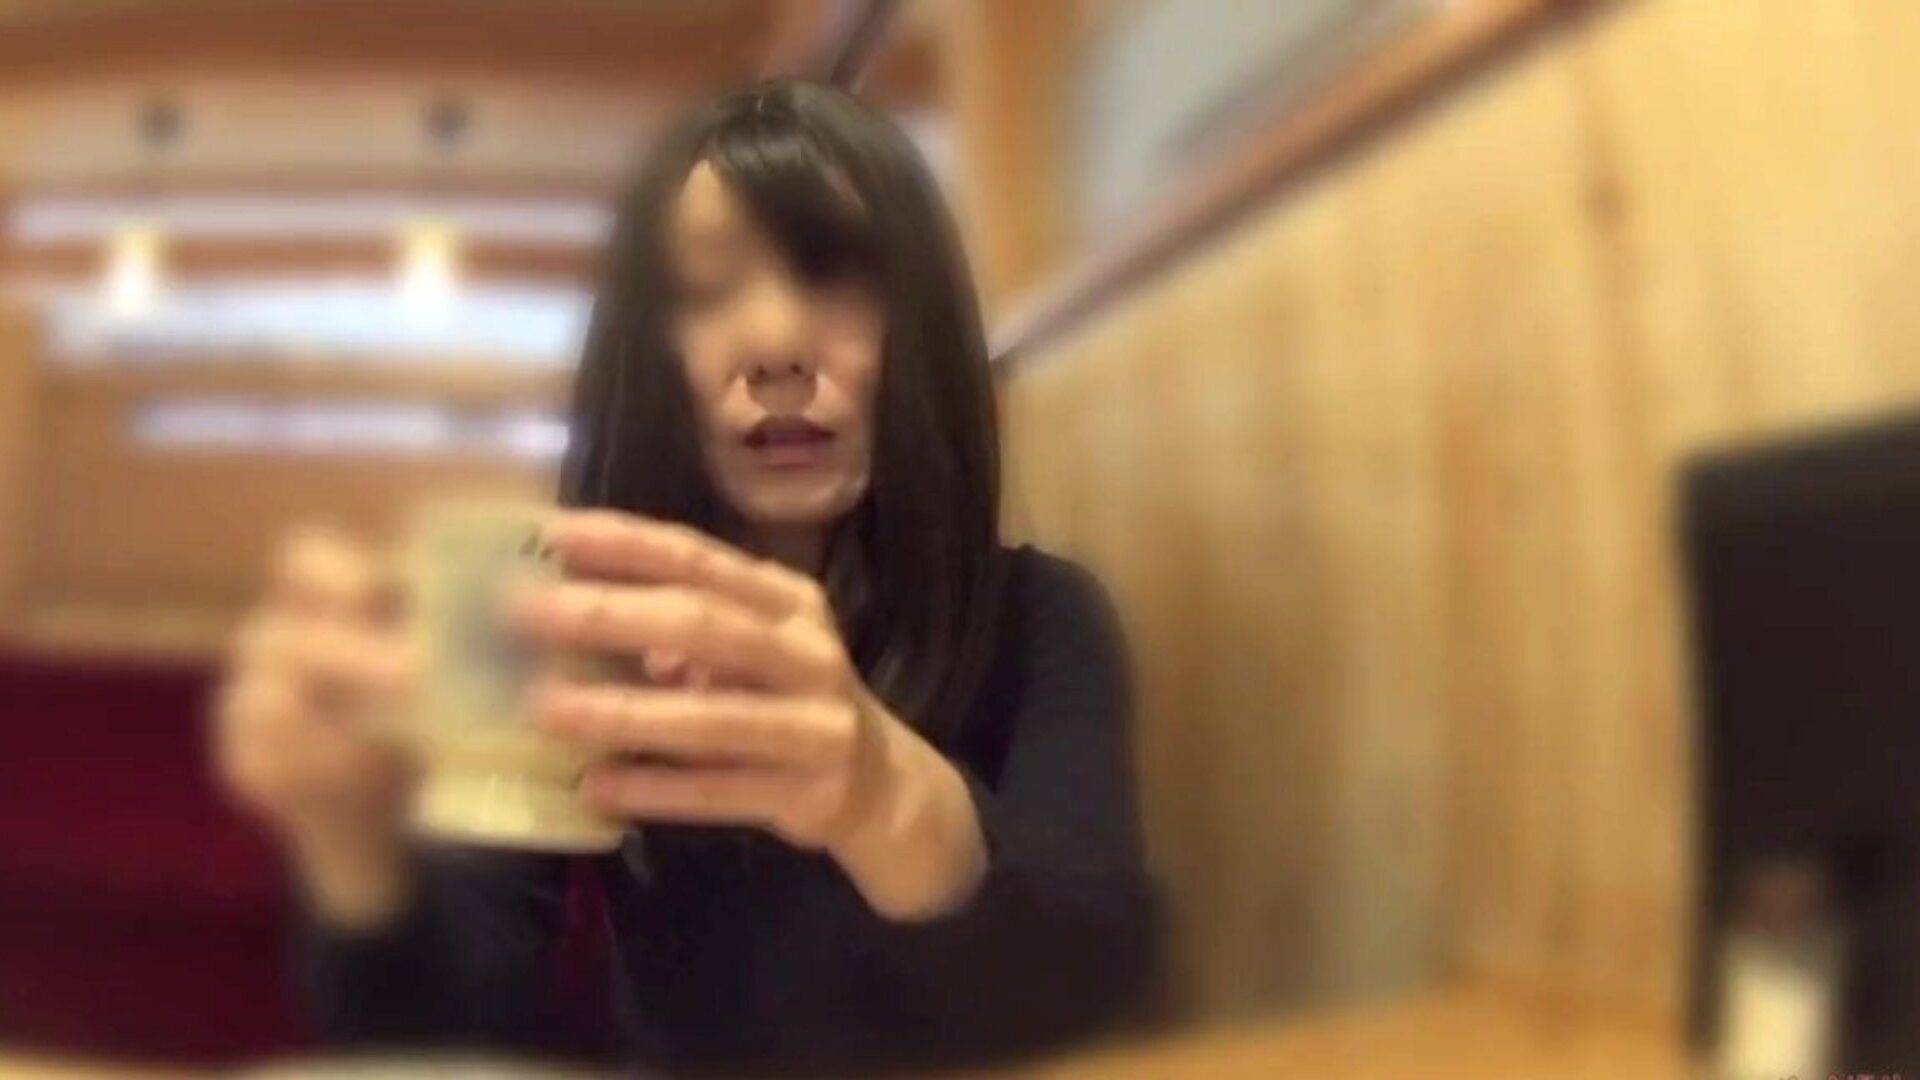 زوجة الديوث خلعت سراويلها الداخلية في المقهى: الاباحية الحرة 60 شاهد زوجة الديوث خلعت سراويلها في المقهى فيديو على xhamster - السرب المطلق من اليابانية الآسيوية الحرة عالية الدقة جونزو أشرطة الفيديو الإباحية أنبوب